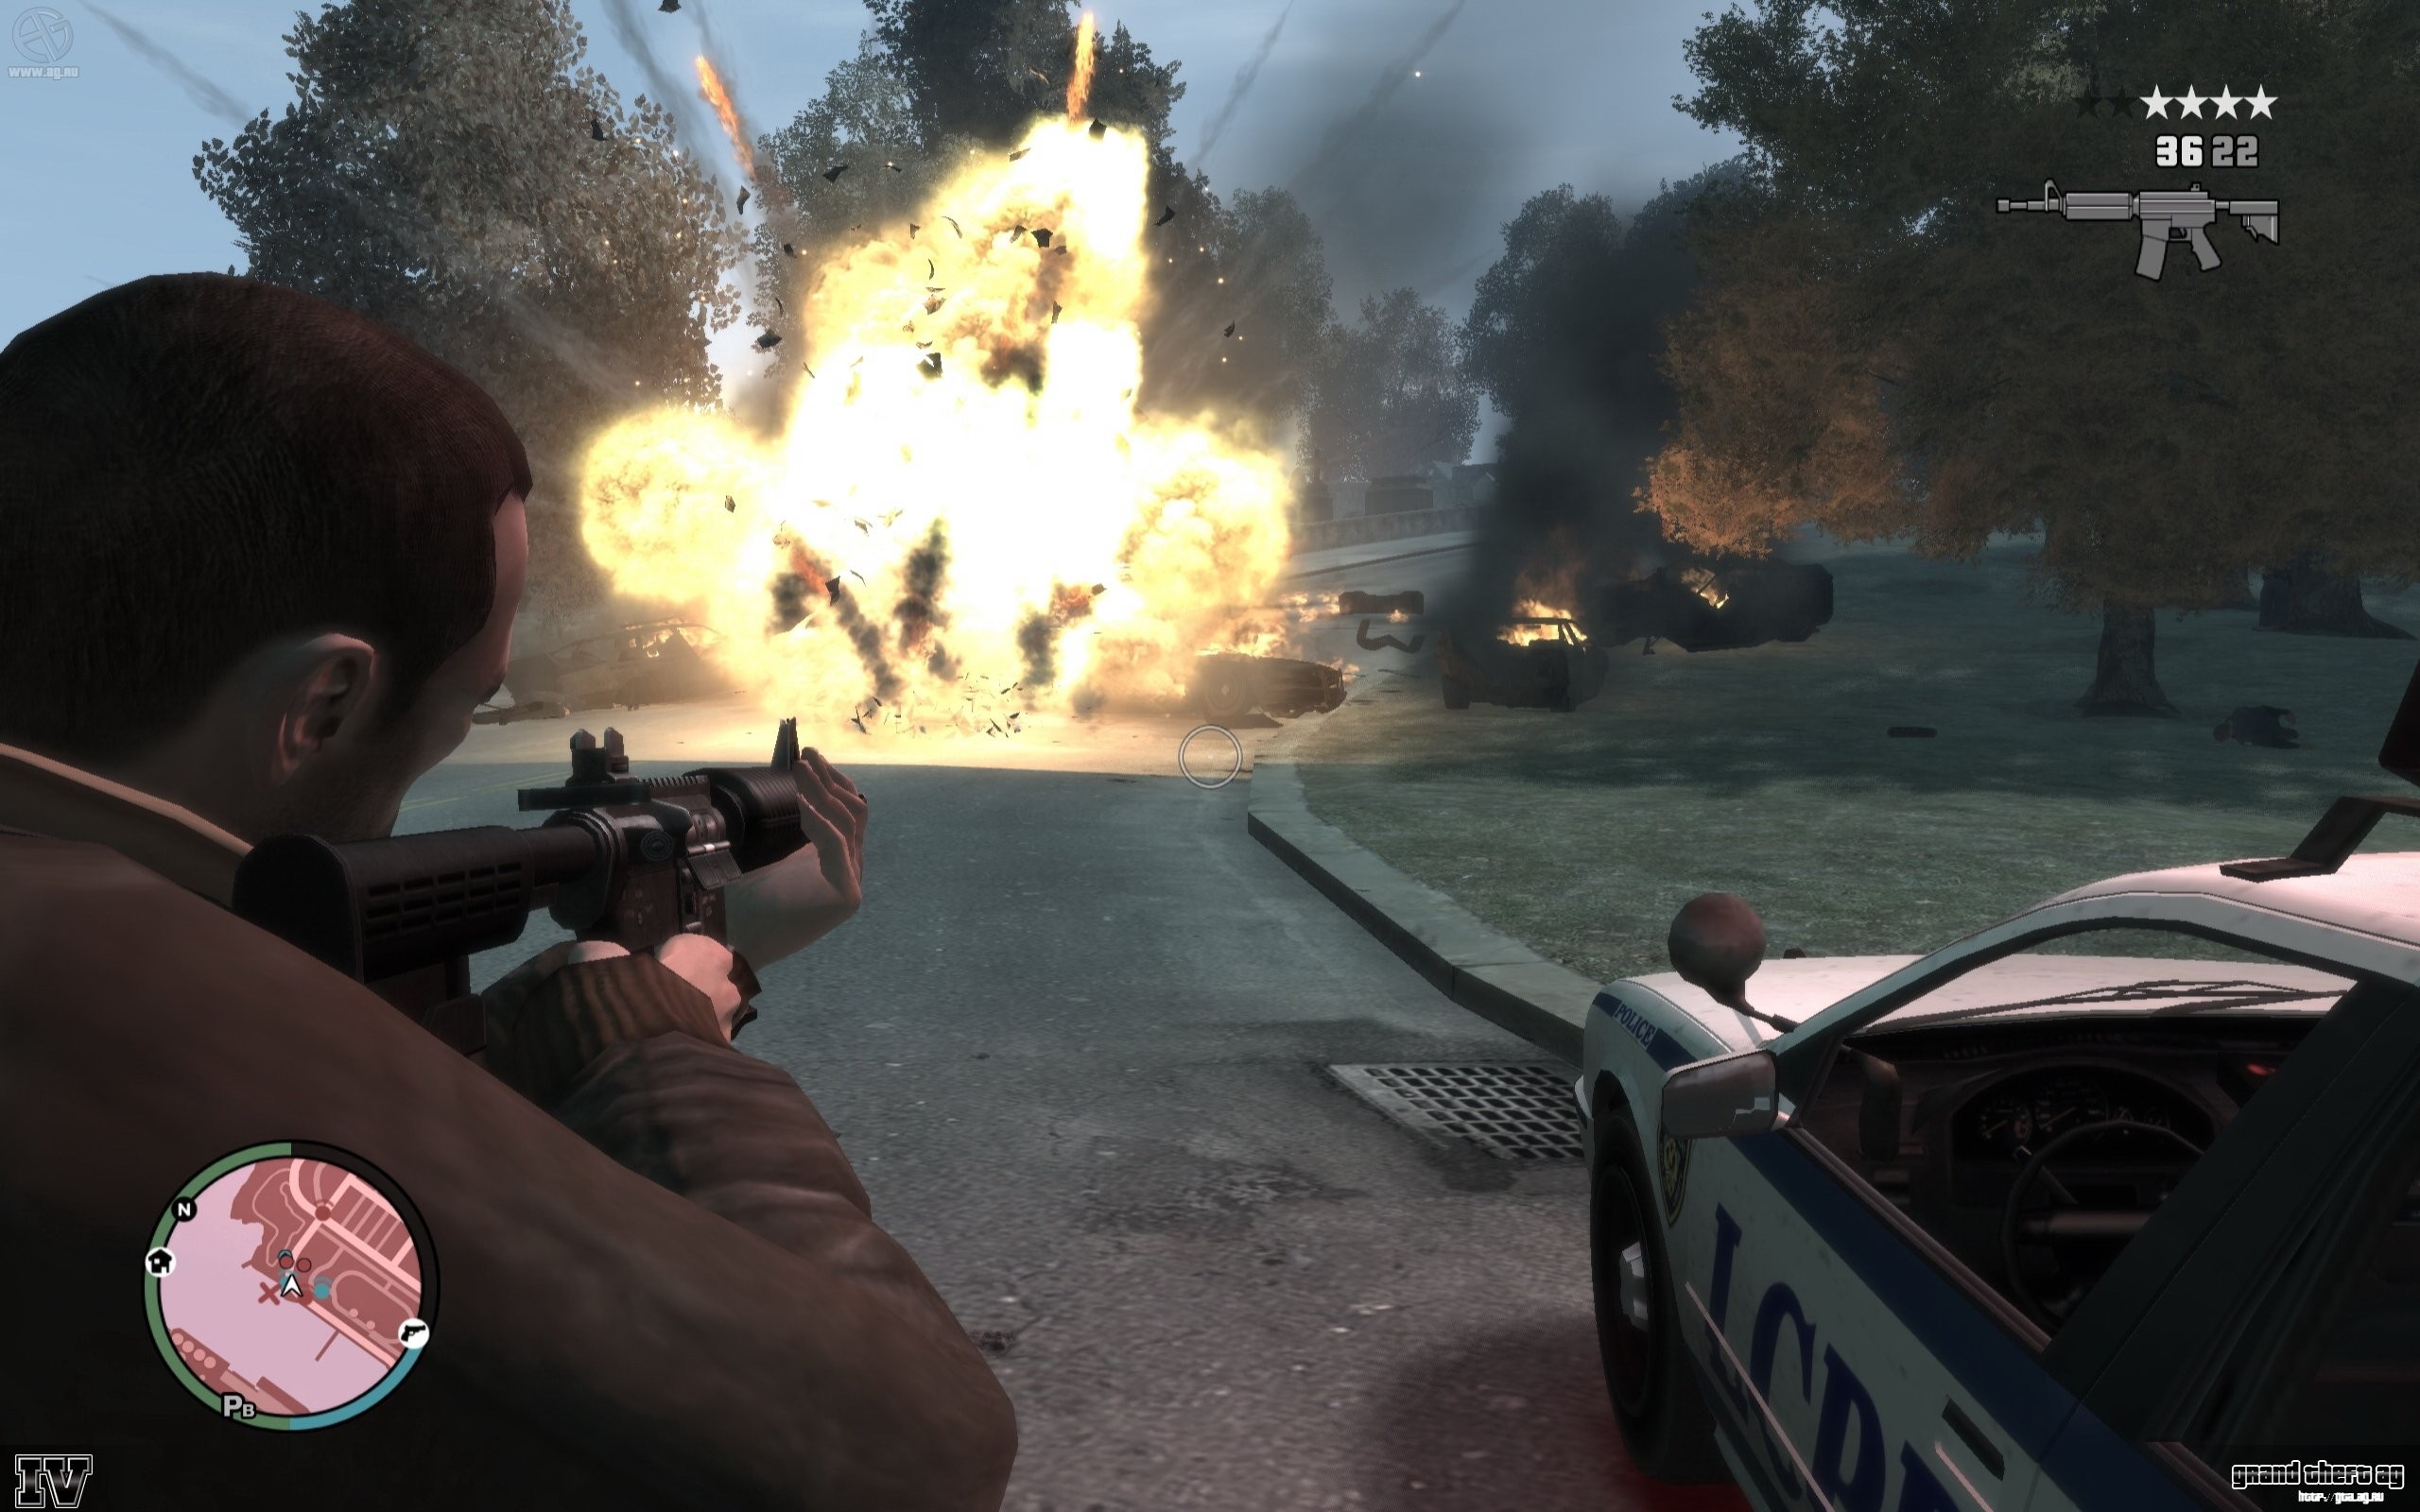 Descarga gratuita de fondo de pantalla para móvil de Grand Theft Auto Iv, Grand Theft Auto, Videojuego.